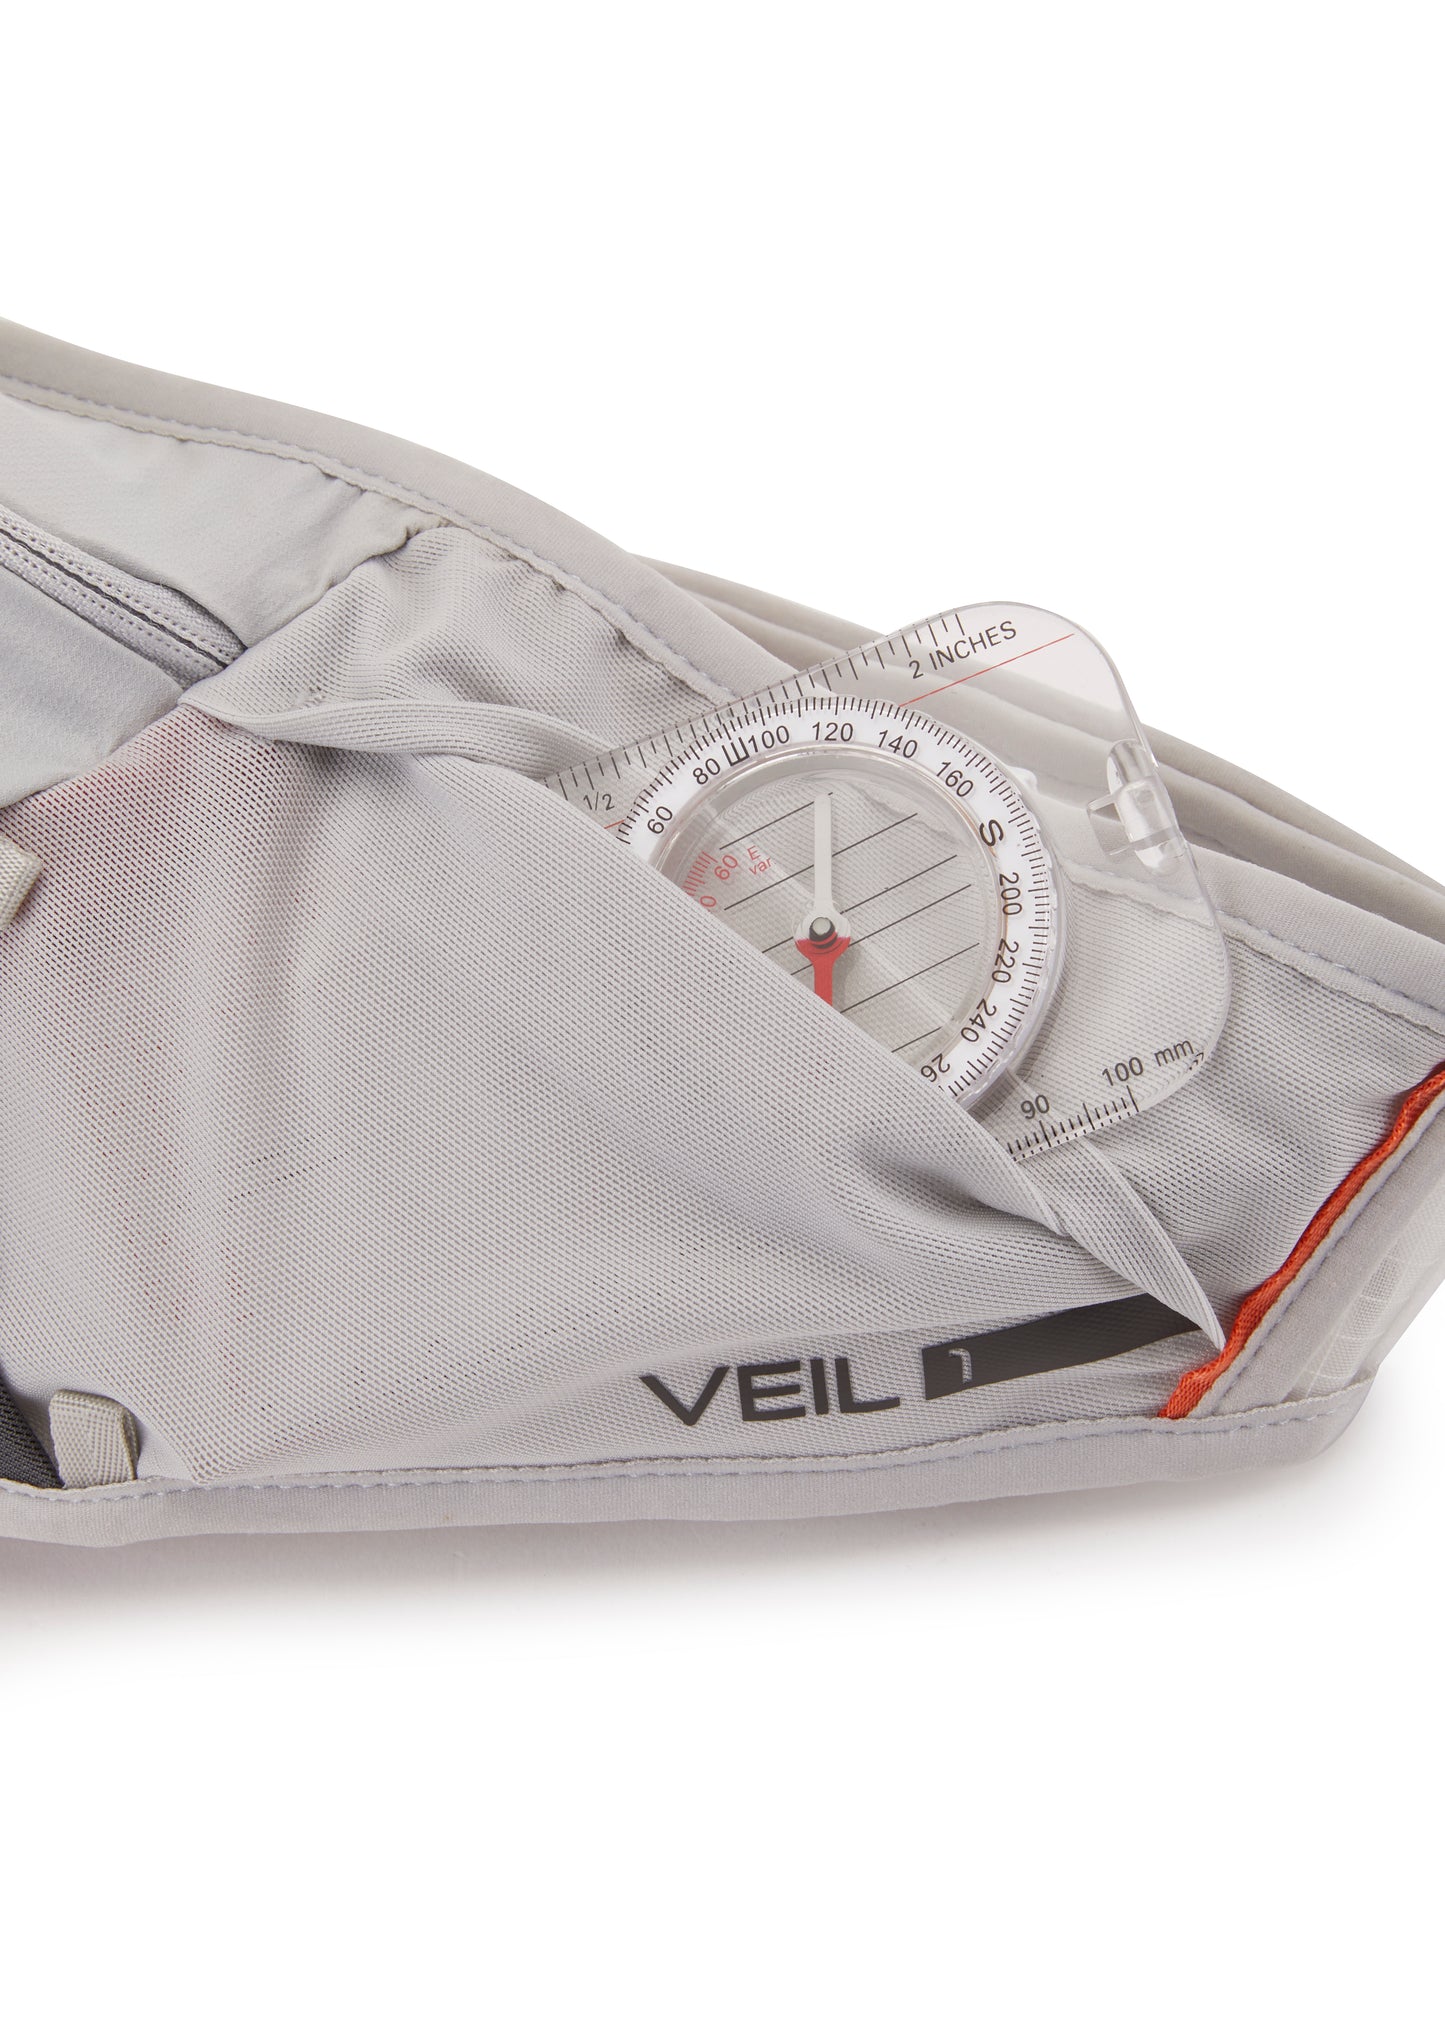 Rab / Veil 1L Lightweight Belt Pack